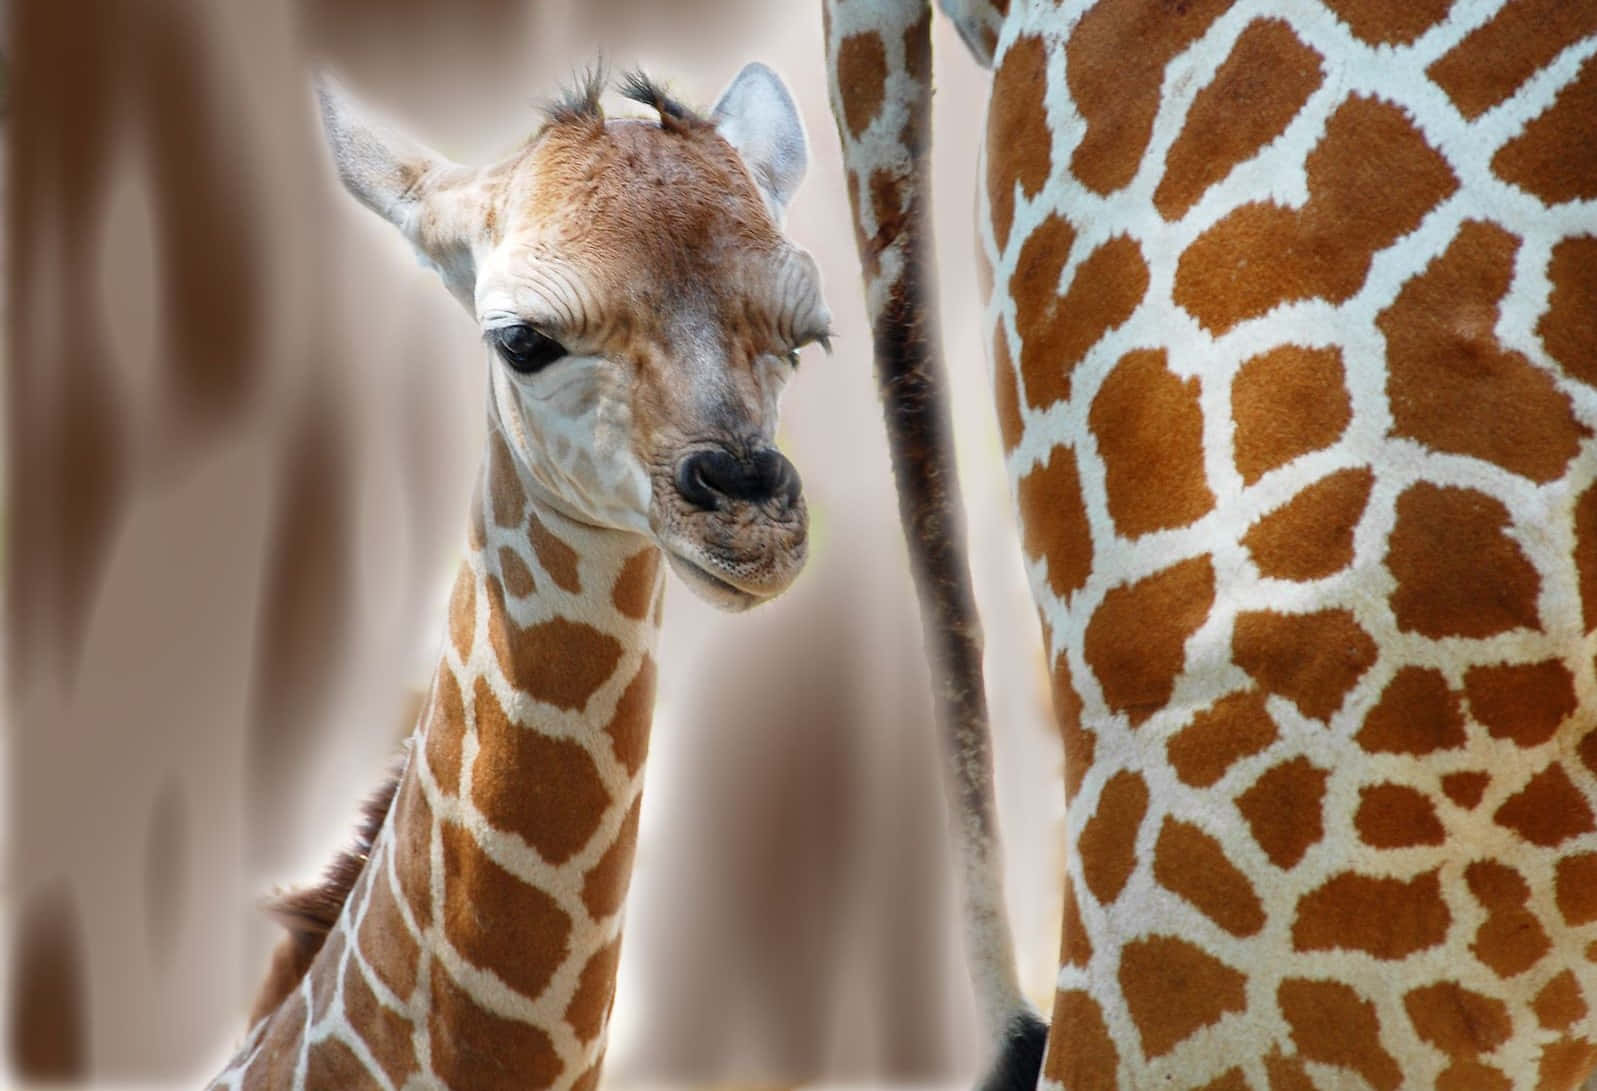 A Giraffe Is Standing Next To Another Giraffe